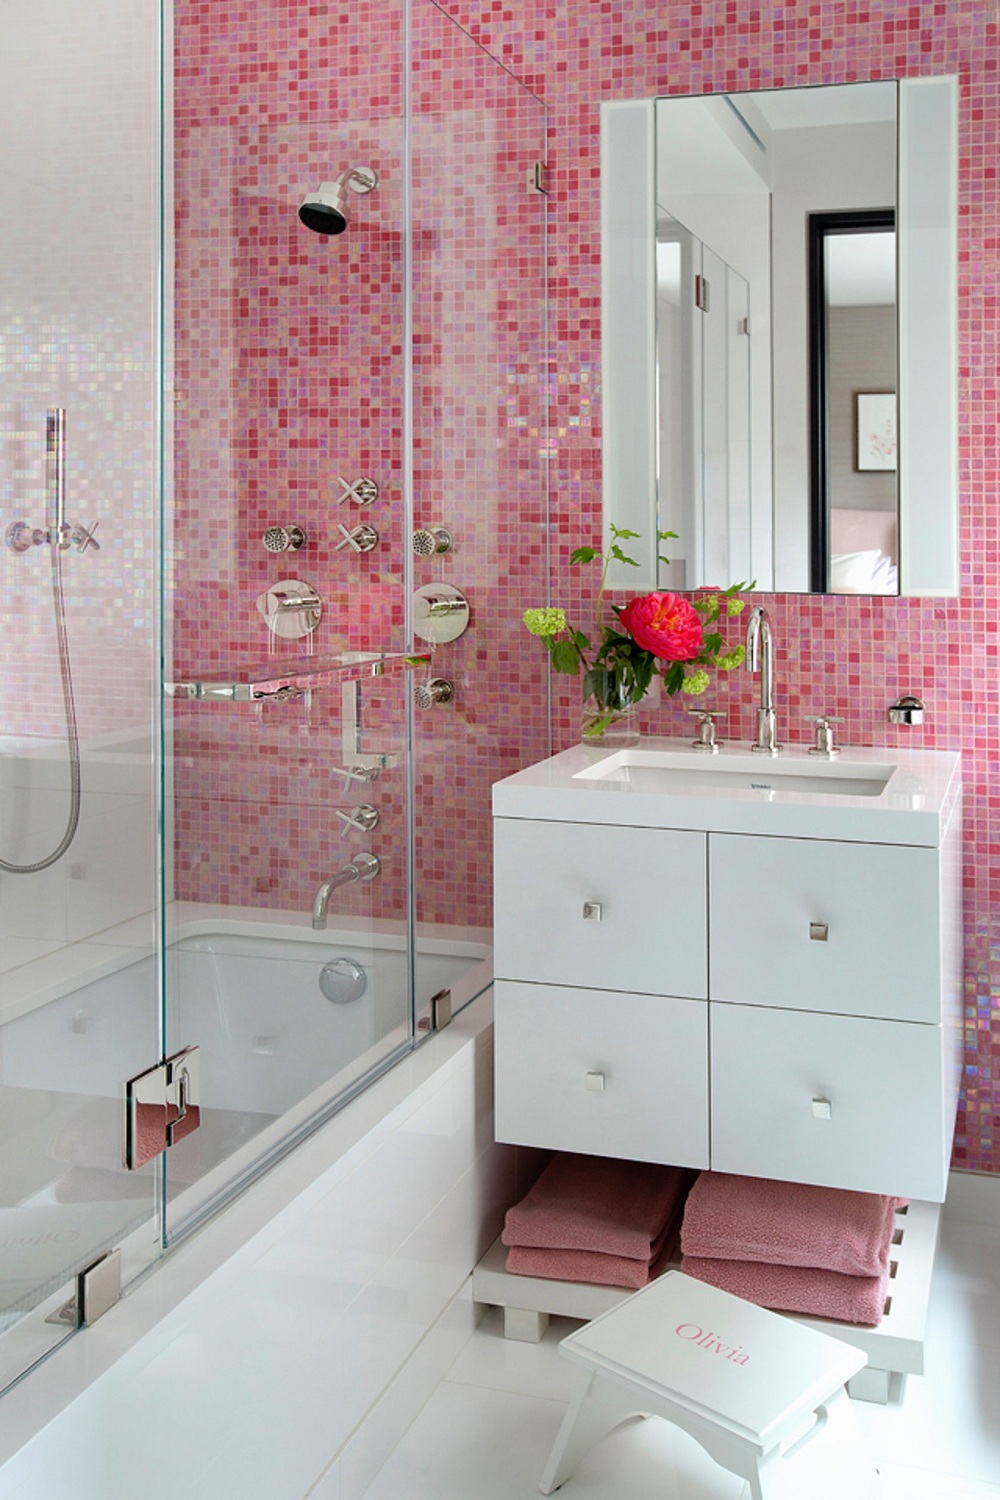 Chỉ với một mảng tường ốp gạch màu hồng cũng đủ để tạo nên vẻ đẹp ngọt ngào cho phòng tắm của cô nàng sành điệu.